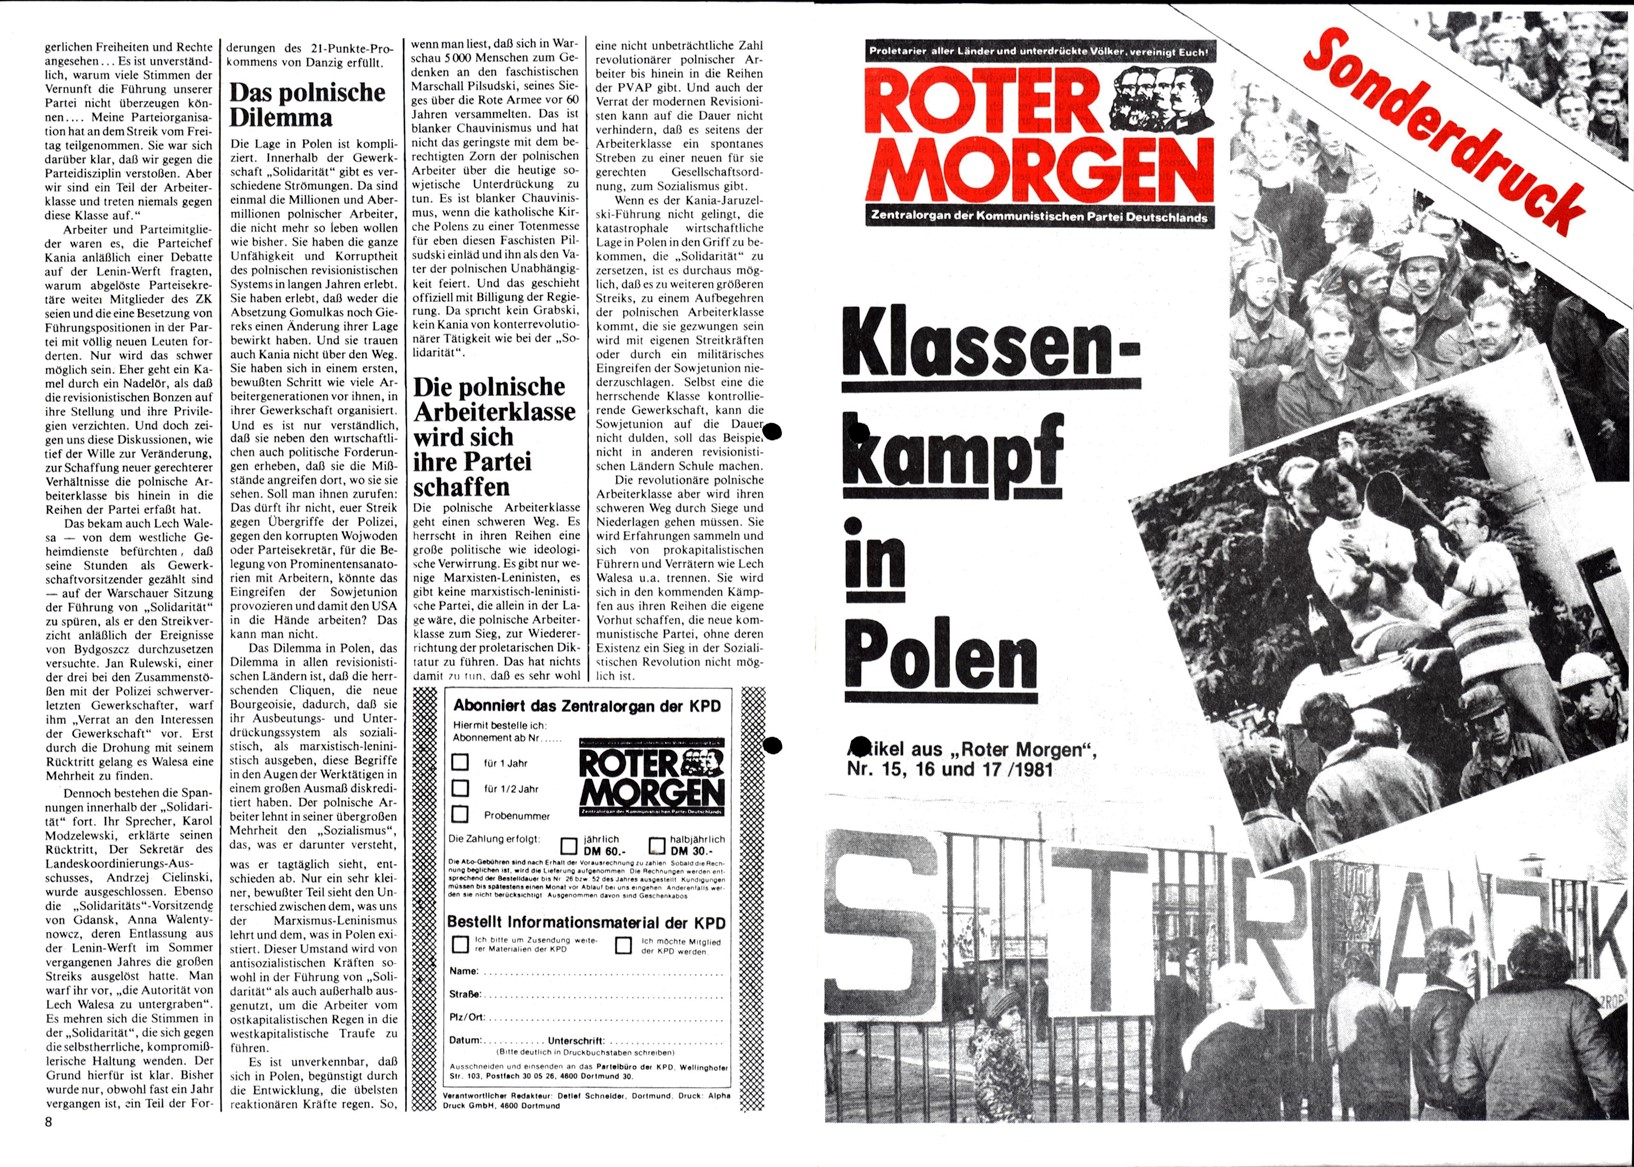 Roter Morgen, 15. Jg., Sonderdruck (Artikel aus RM 15-17/1981), Seite 1/8